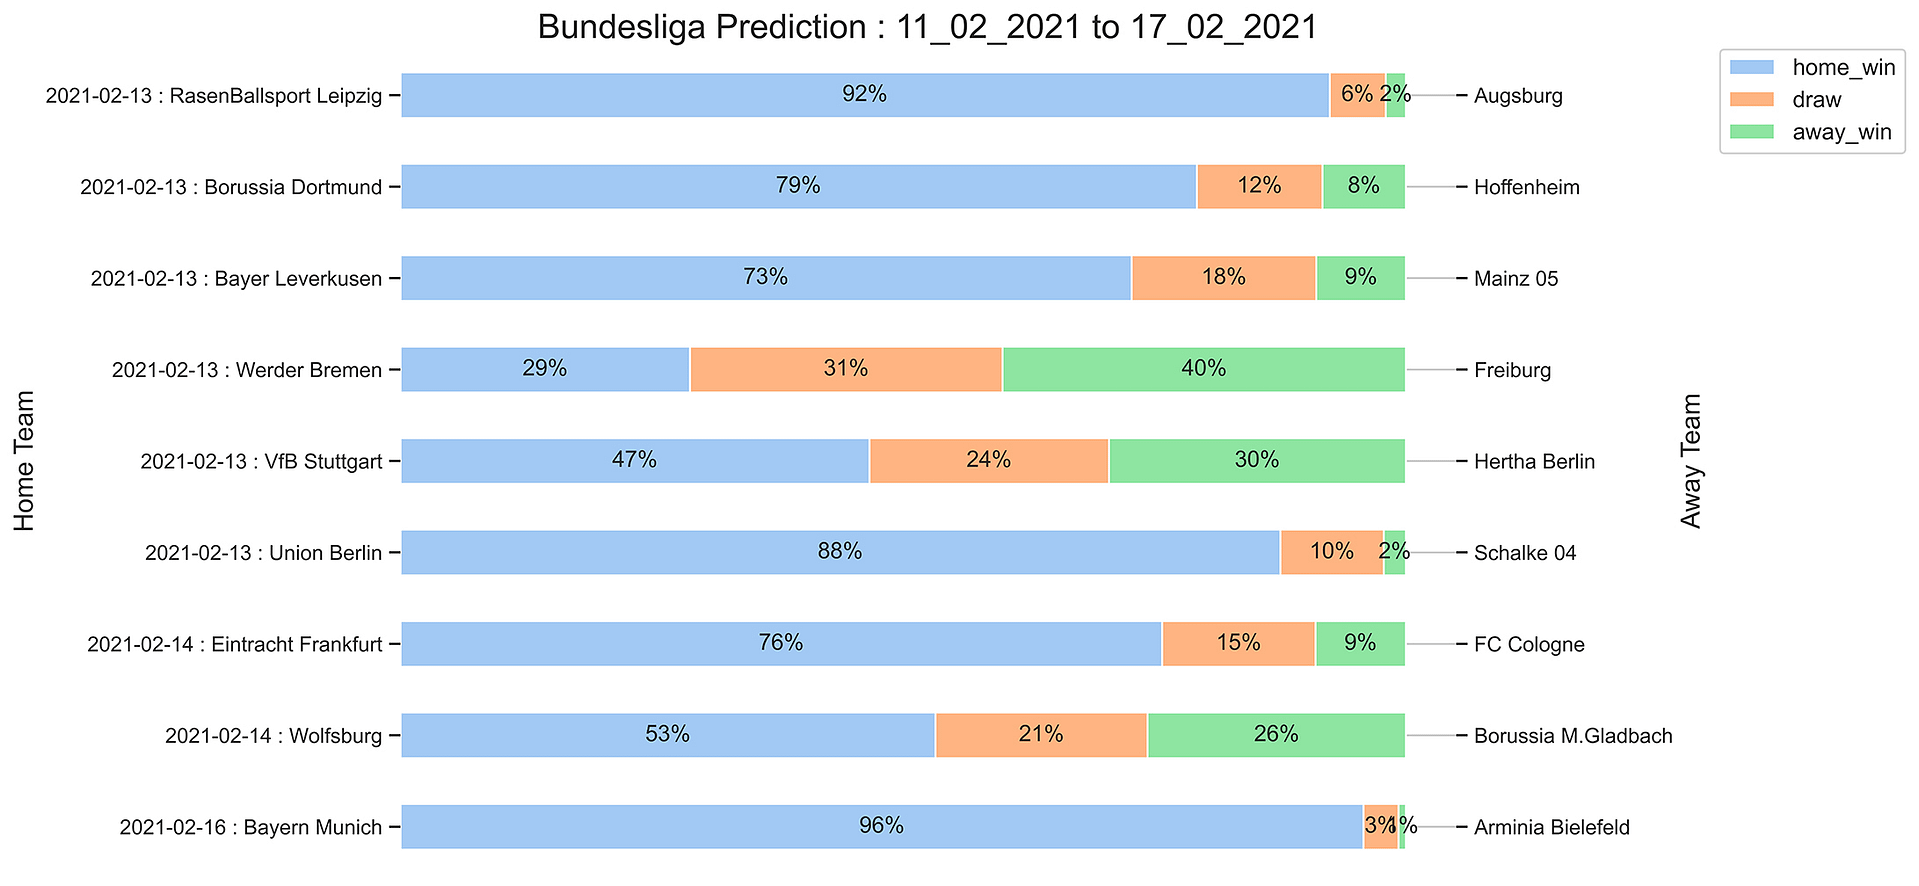 Bundesliga_Prediction 11_02_2021